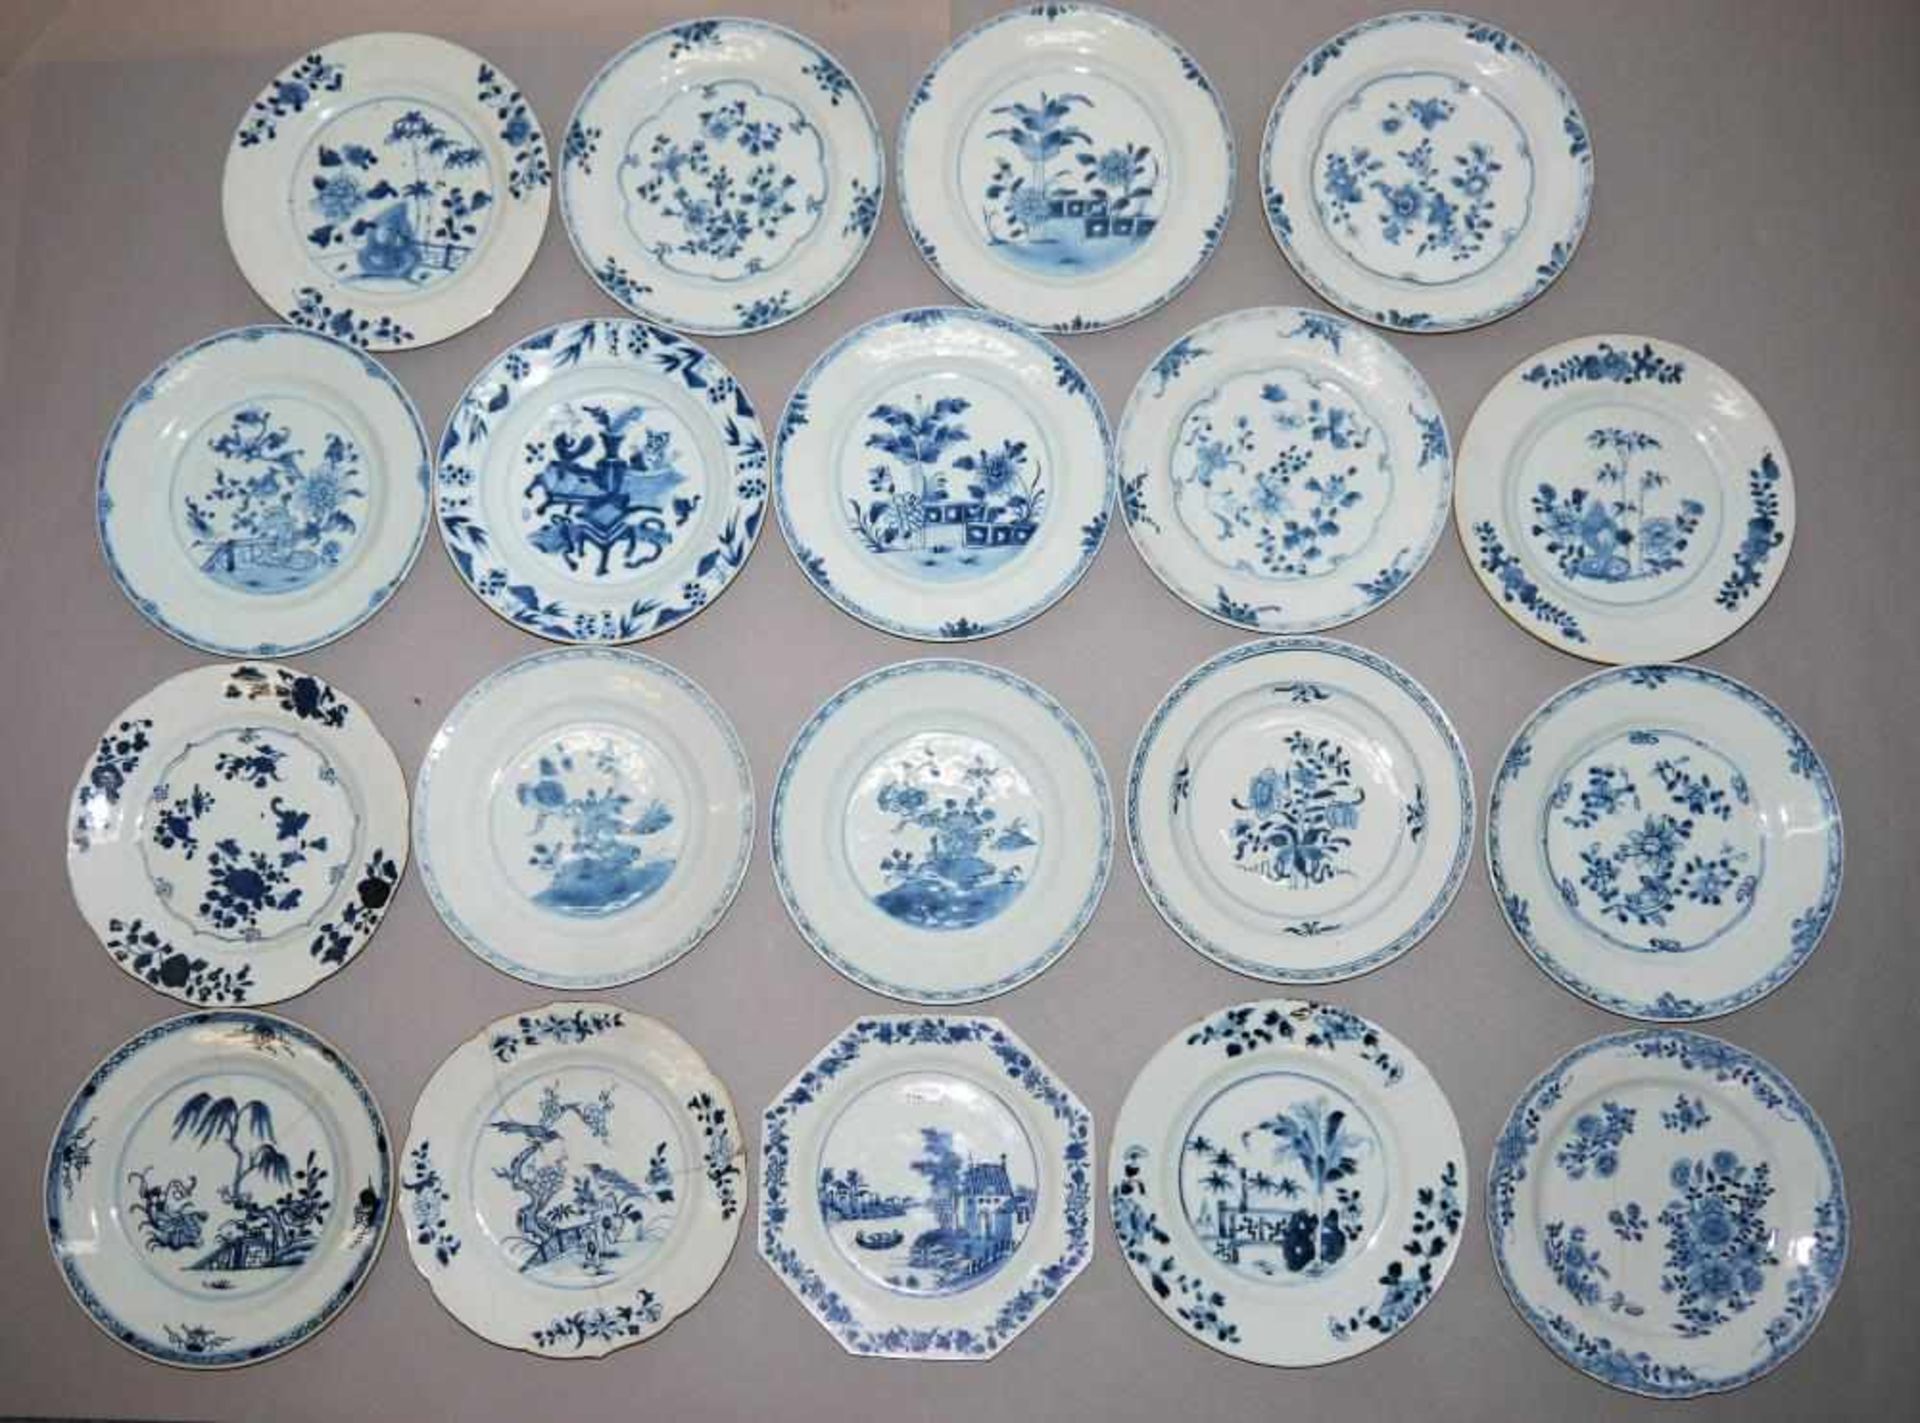 Große Sammlung Blauweiß-Teller, Export-Porzellan der Qianlong-Zeit, China, 2. H. 18. Jh. 19